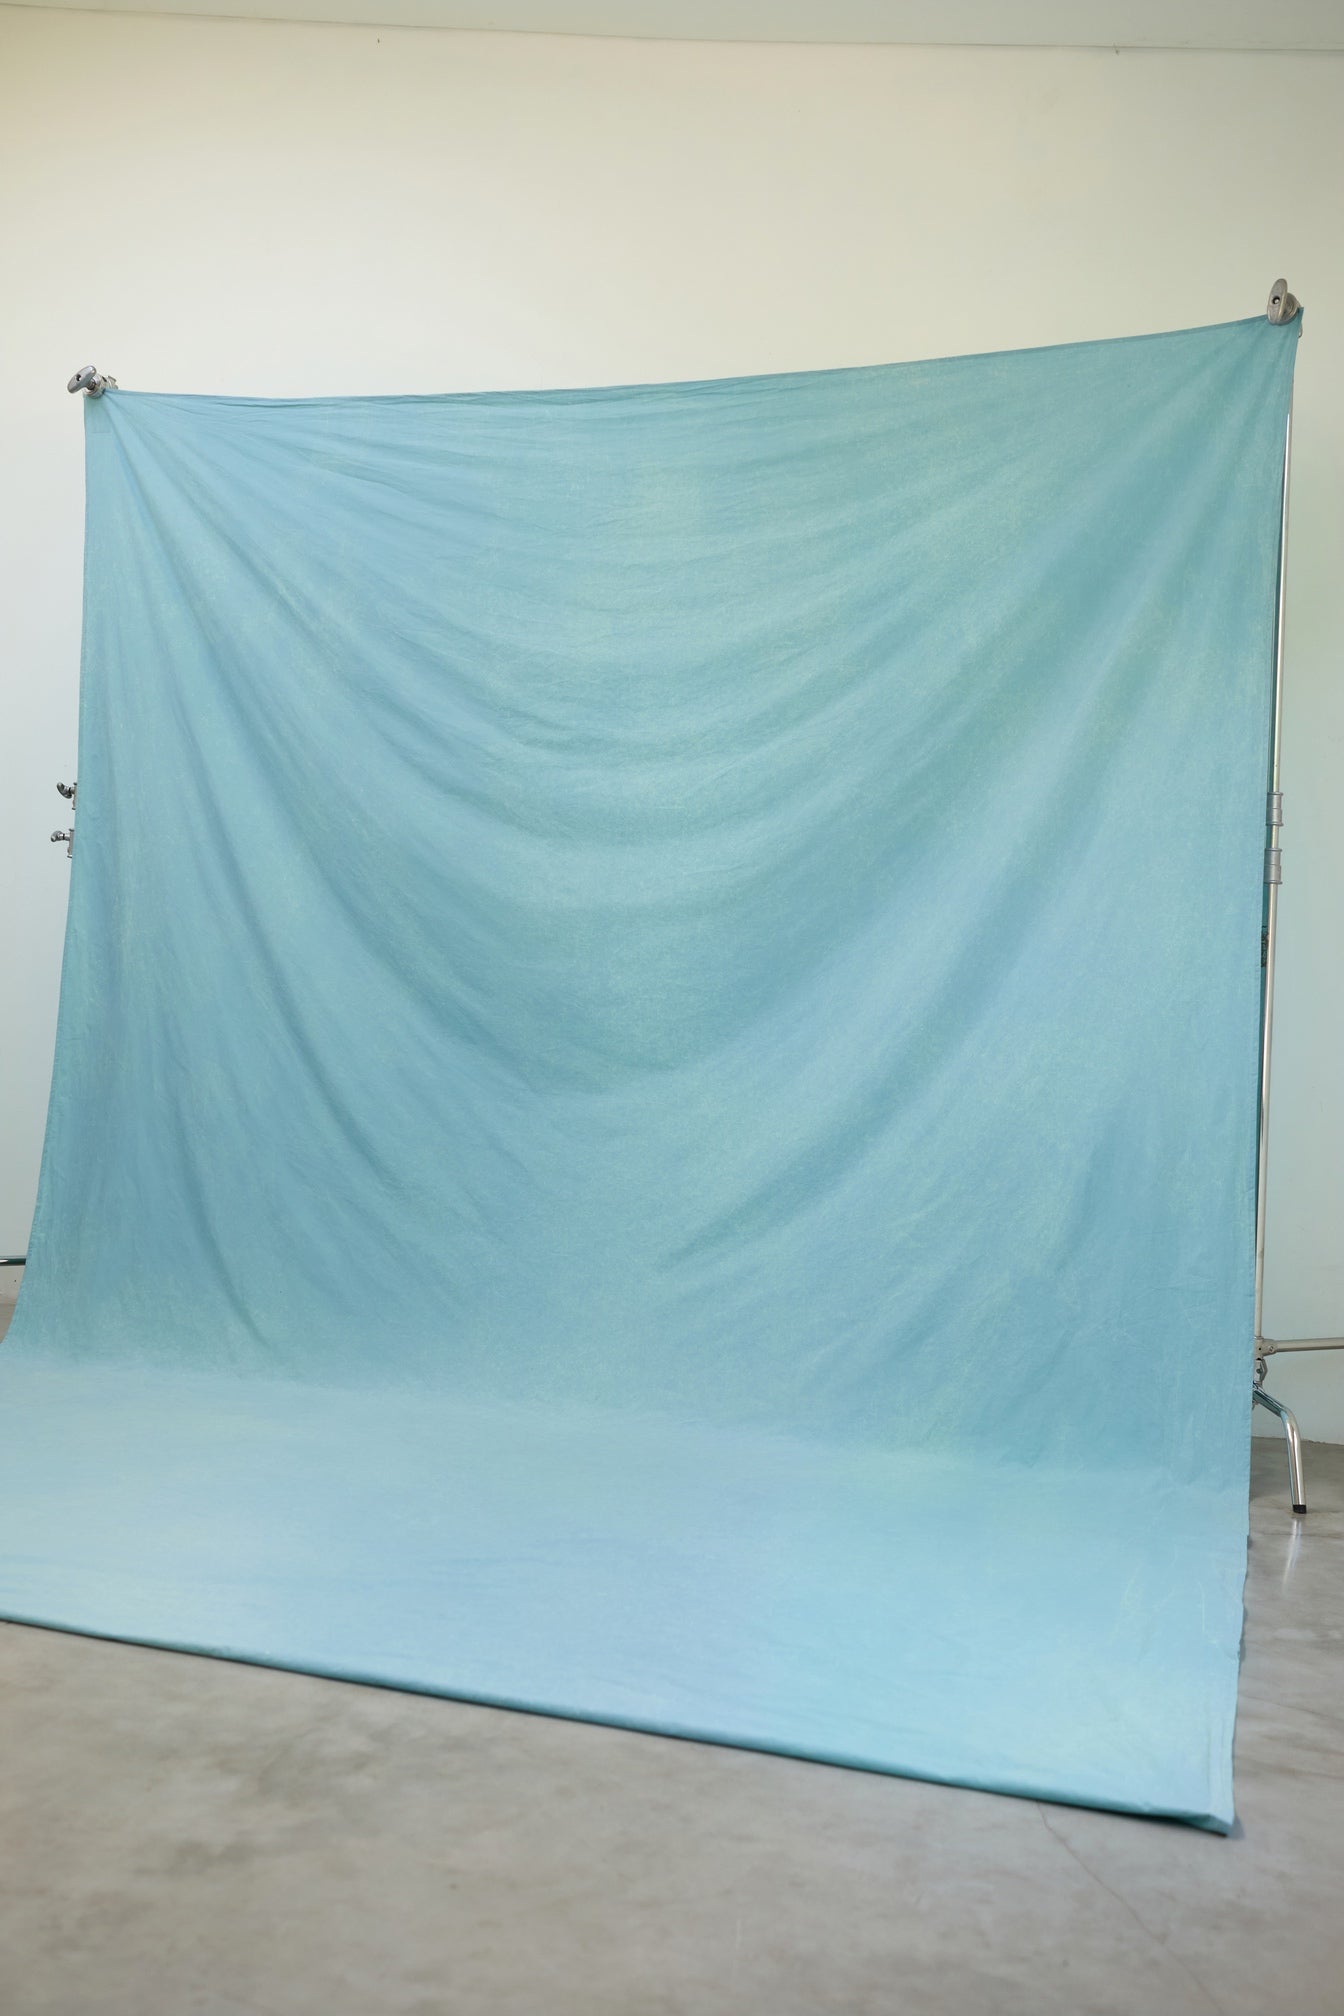 [3x4m] Cotton Backdrop Pigeon Blue